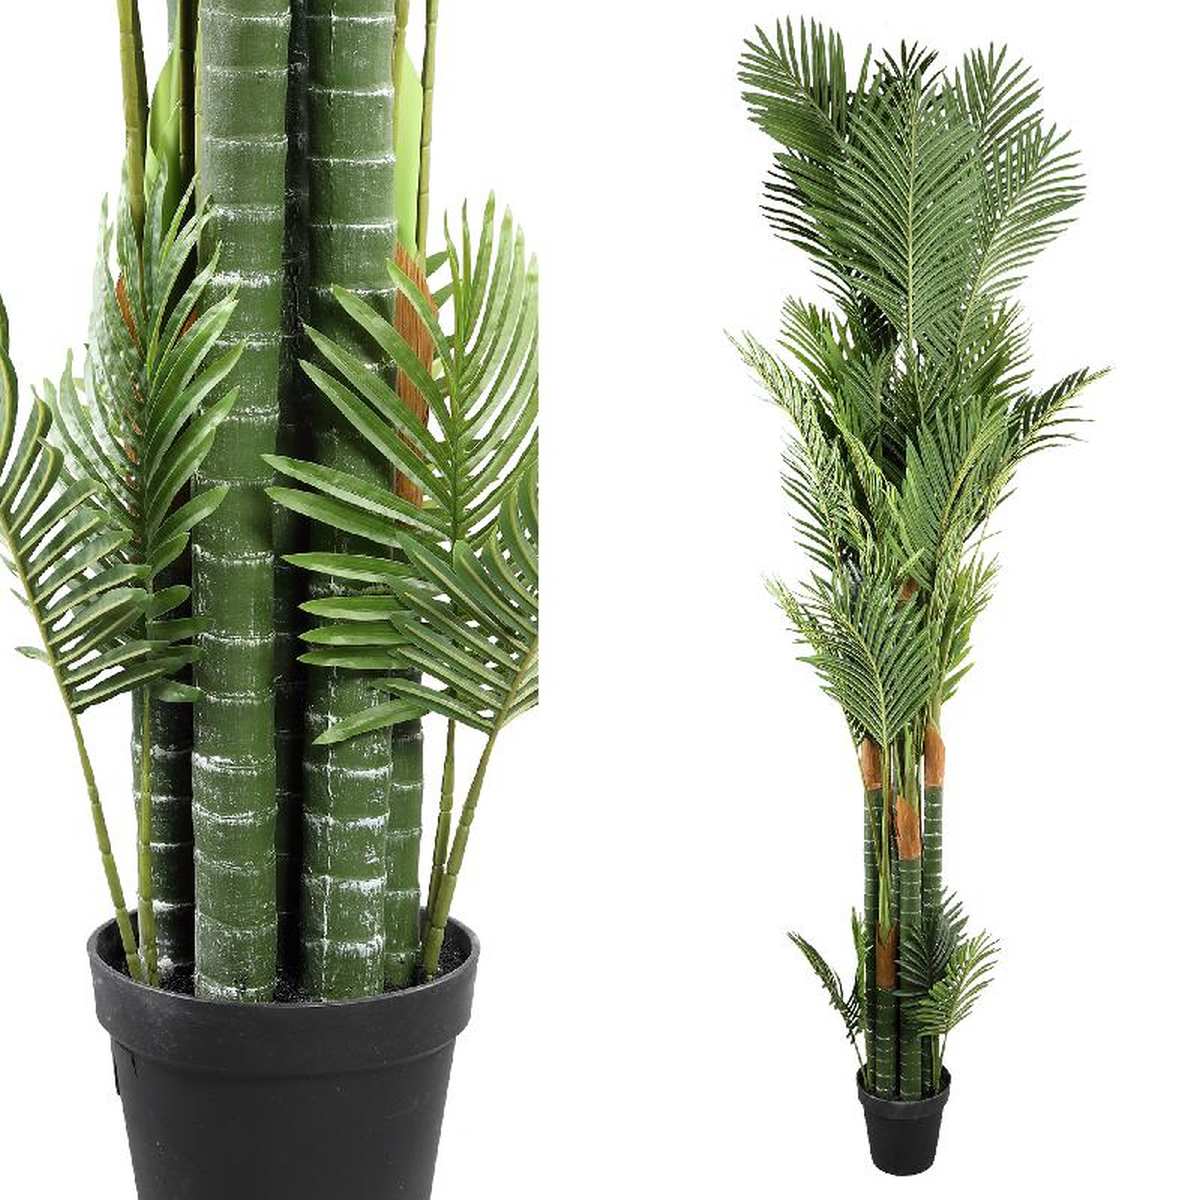 Ptmd hawaii palm plante d'arte - 200 x 145 x 250 cm - pot en plastique - vert